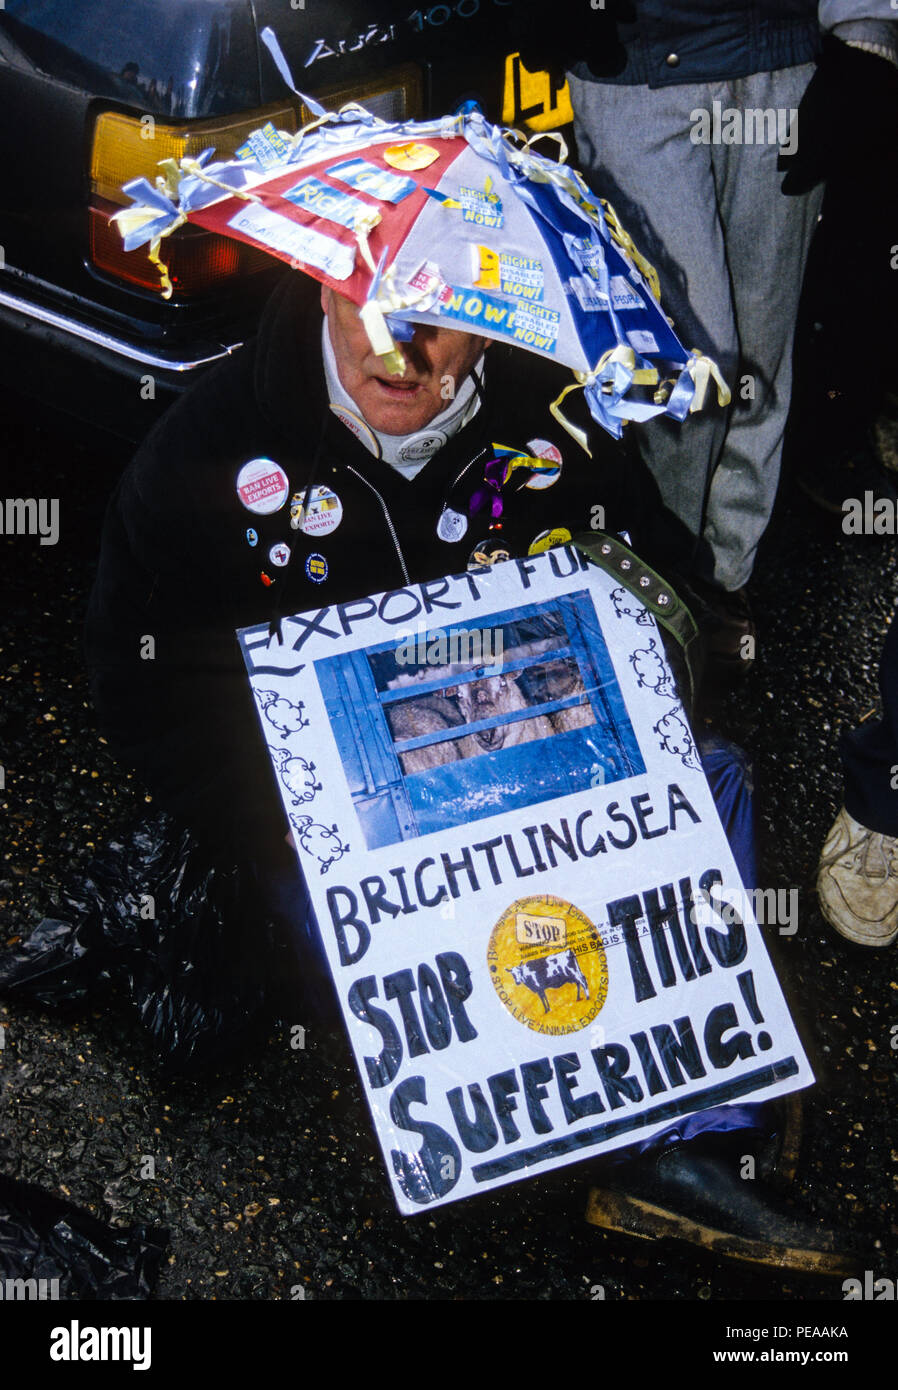 Batalla de Brightlingsea, Live Exportar protestas, Brightlingsea, Essex, Inglaterra, Reino Unido, GB. Foto de stock